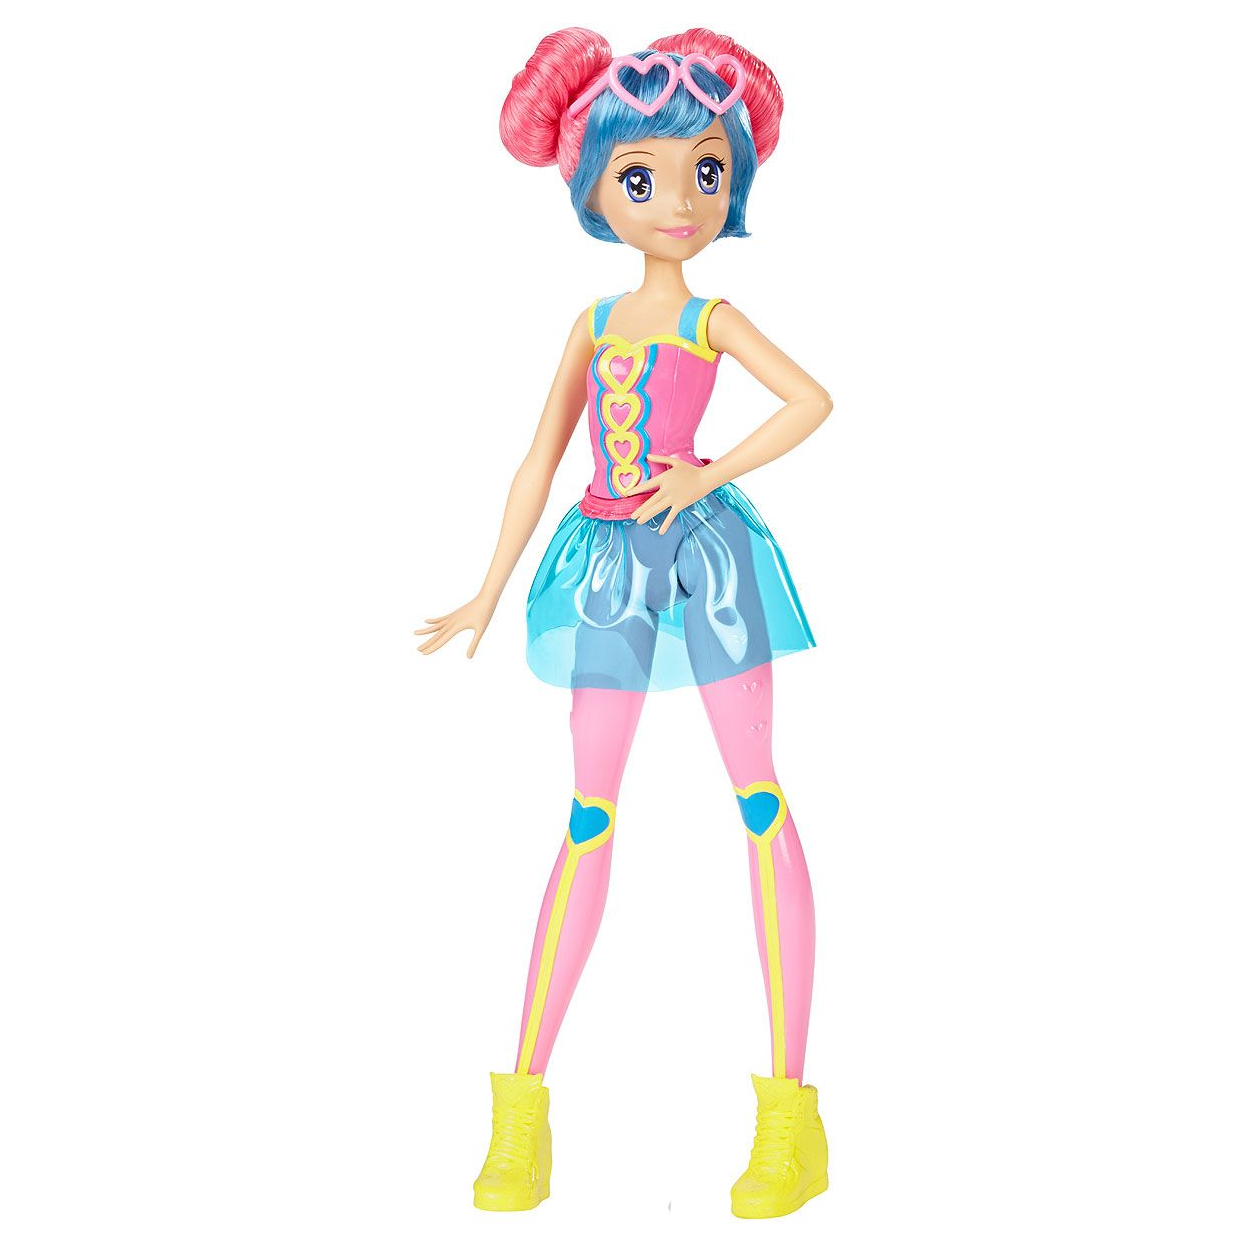 Кукла Barbie Виртуальный мир Подружка Барби в розово голубой одежде